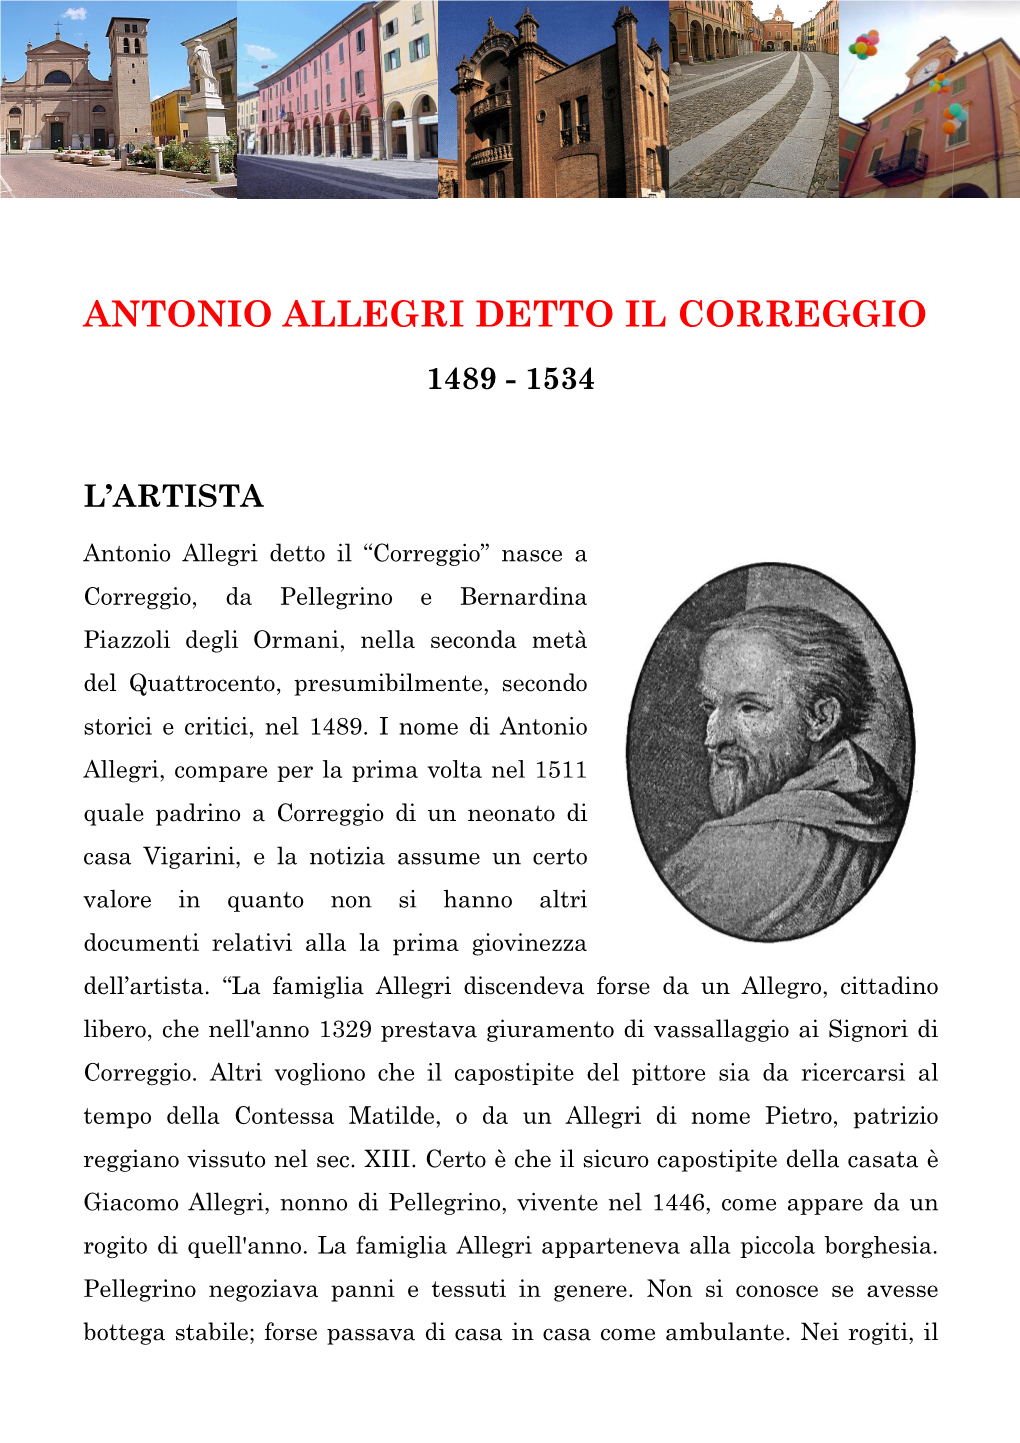 Antonio Allegri Detto Il Correggio 1489 - 1534